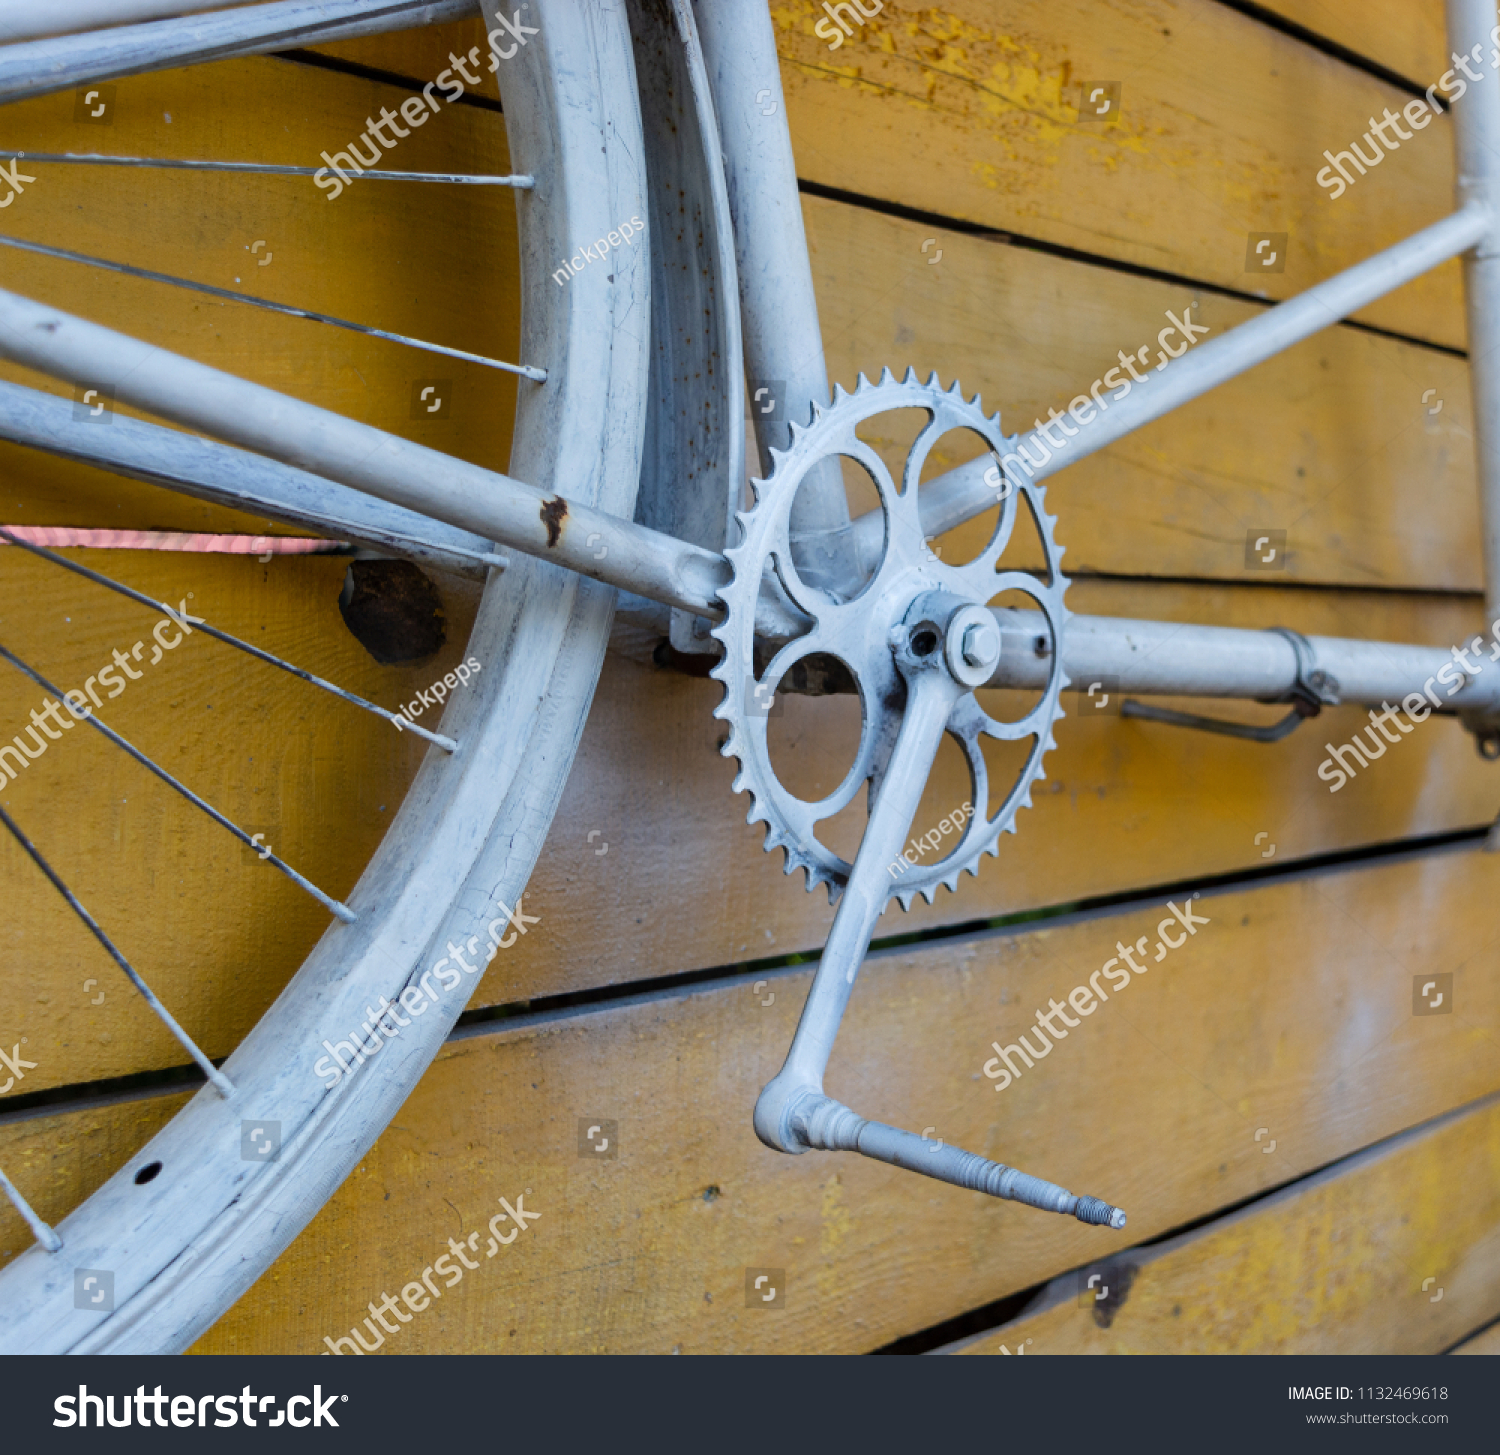 pedalon bikes